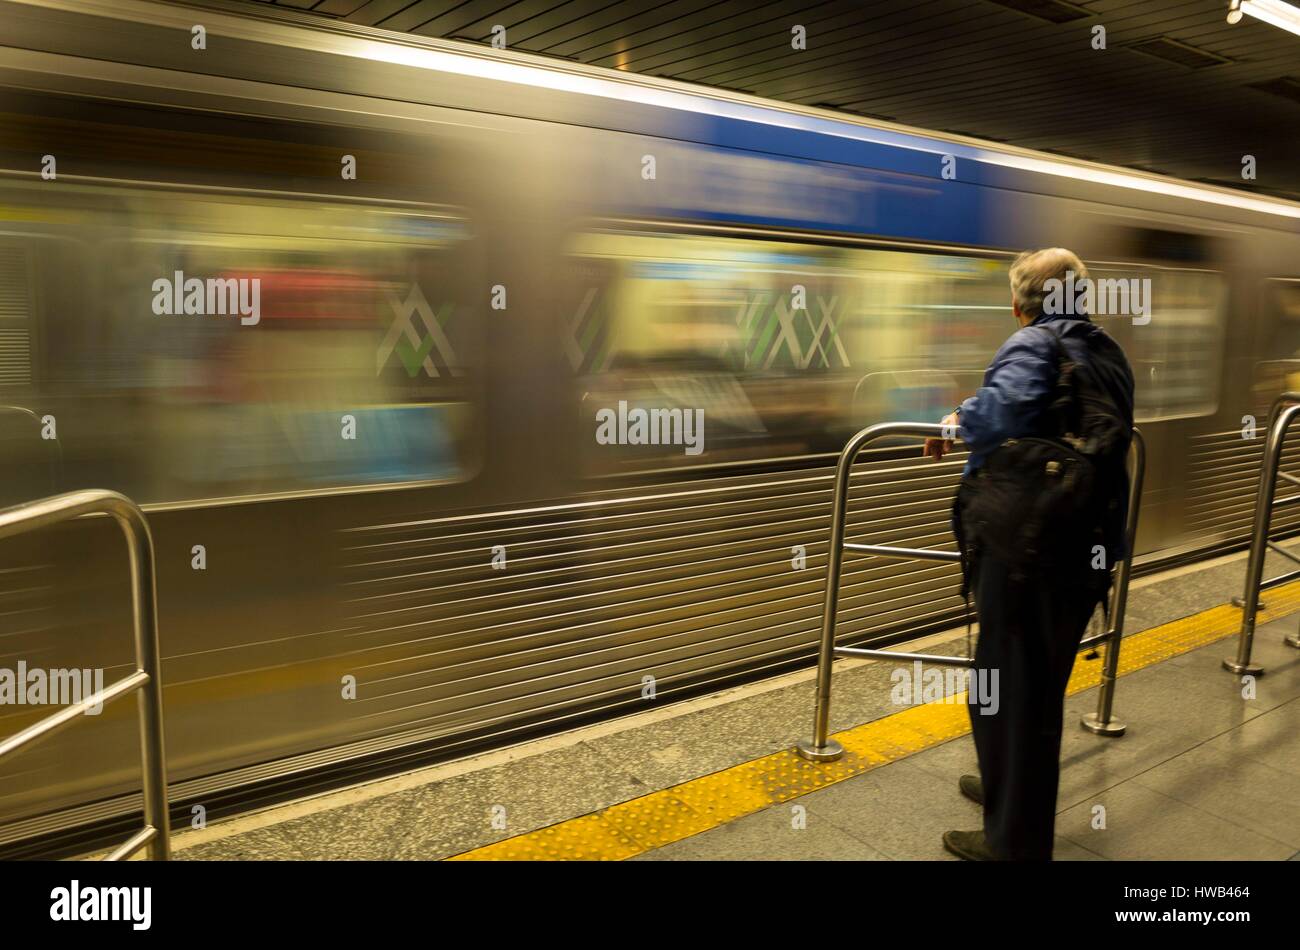 Brazil, Sao Paulo state, Sao Paulo, metro station Stock Photo